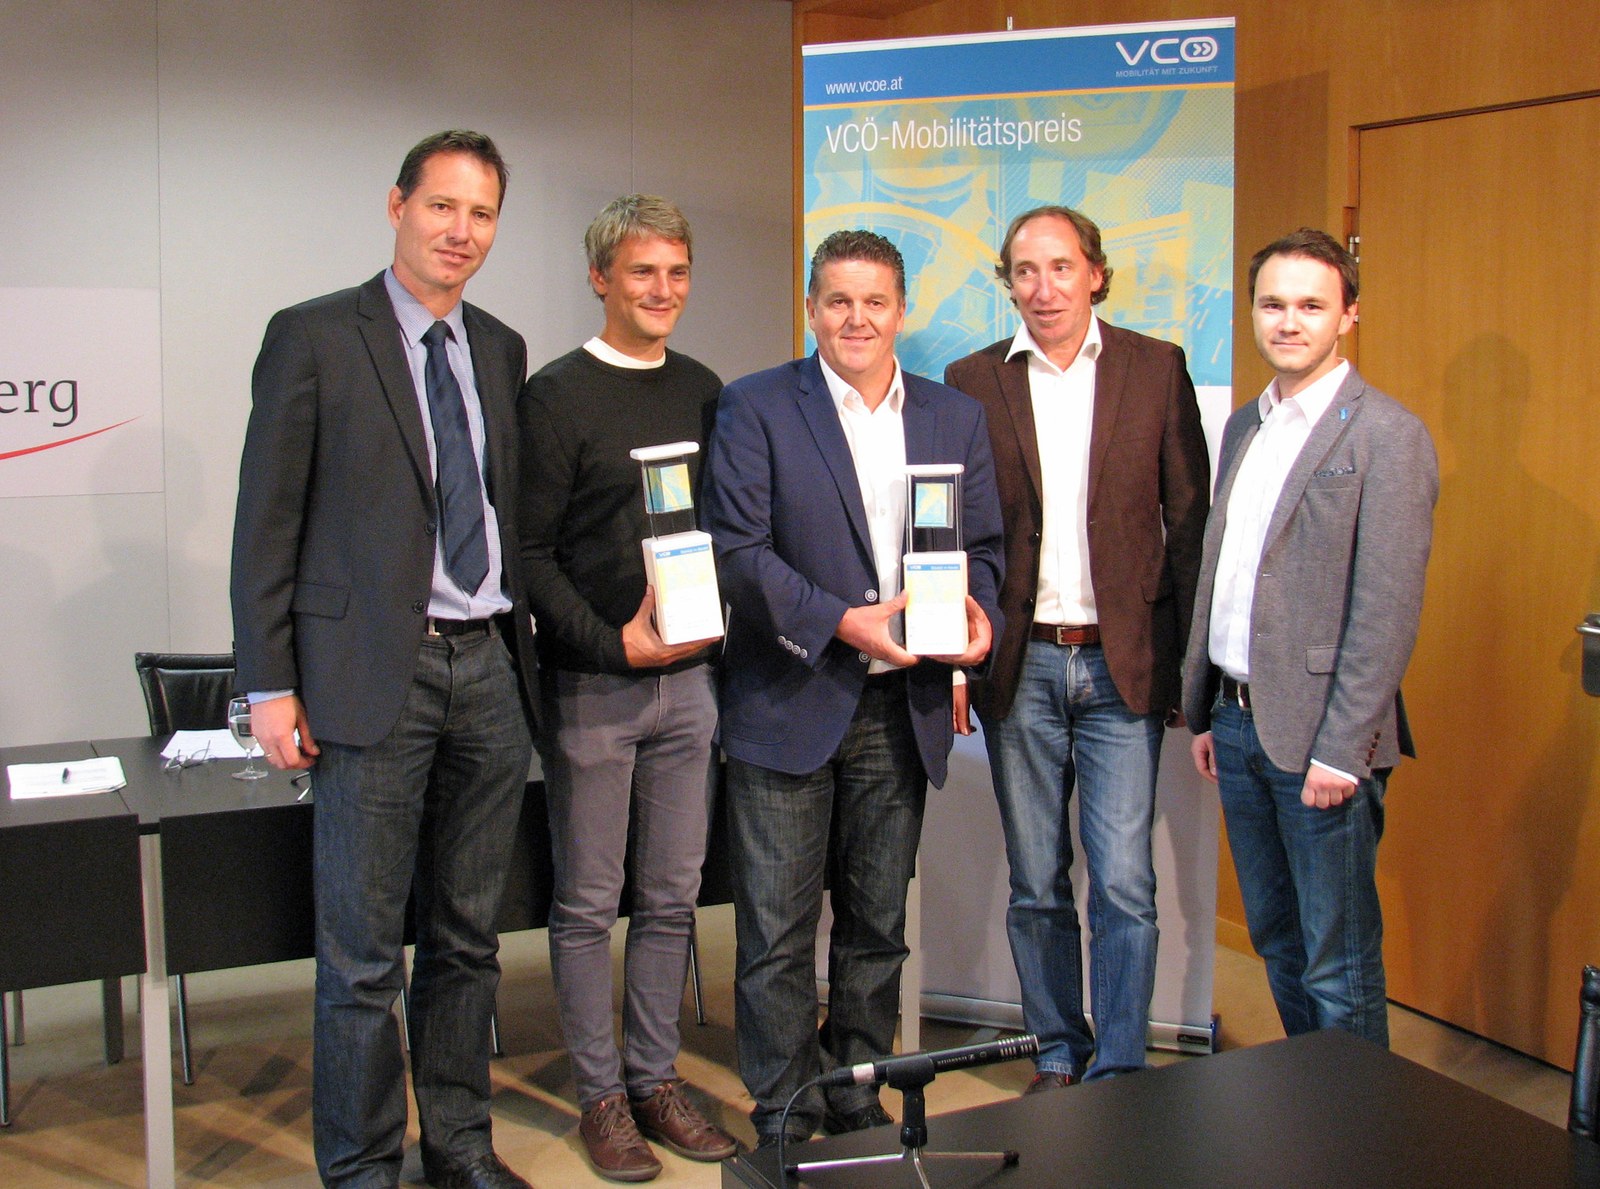 VCÖ Preis Vorarlberg 2015 ans Energieinstitut Vorarlberg